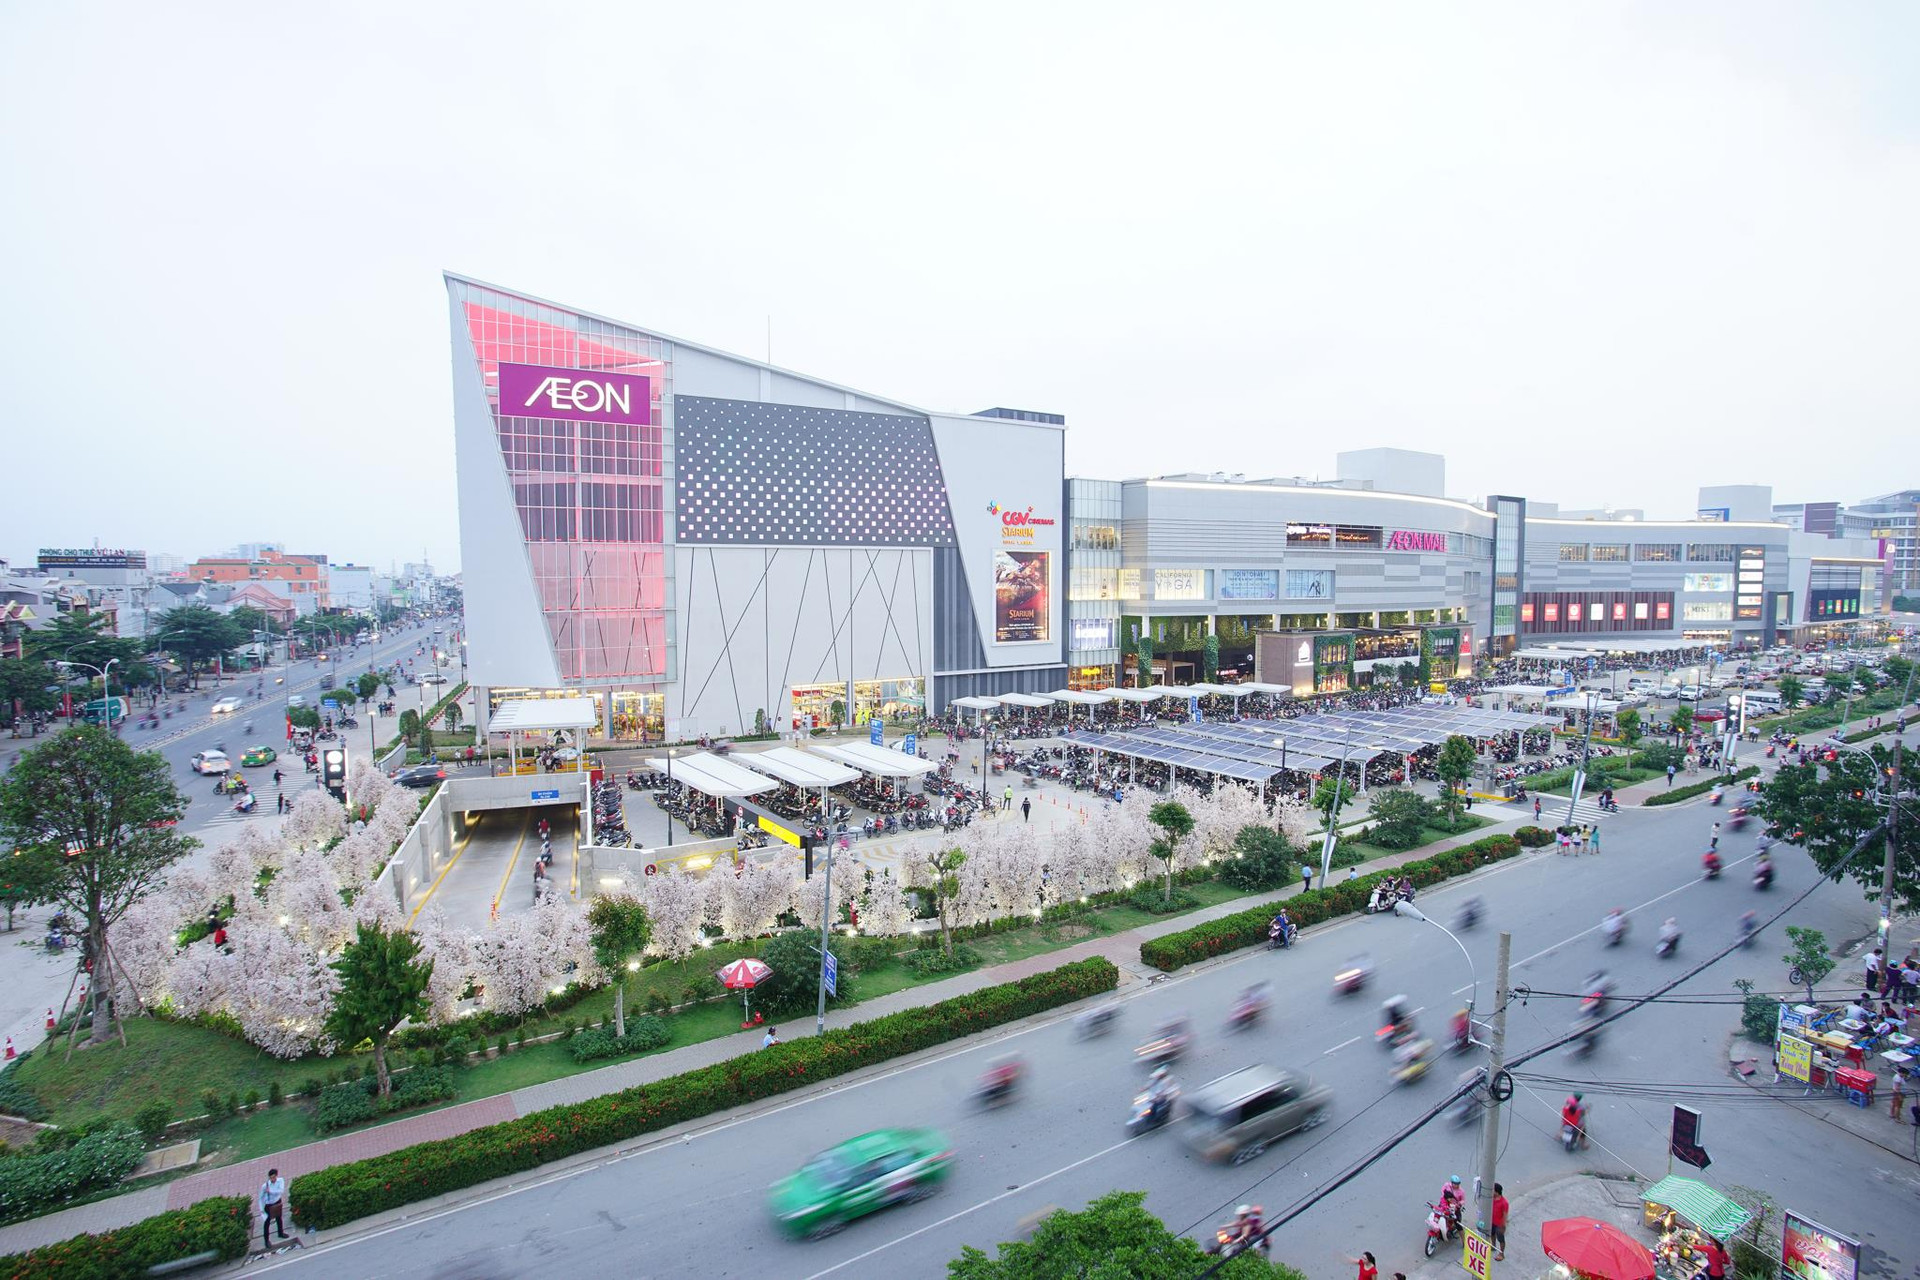 Aeon muốn xây 2 trung tâm mua sắm ở Cần Thơ và Bắc Giang, mỗi trung tâm trị giá 250 triệu USD - Ảnh 1